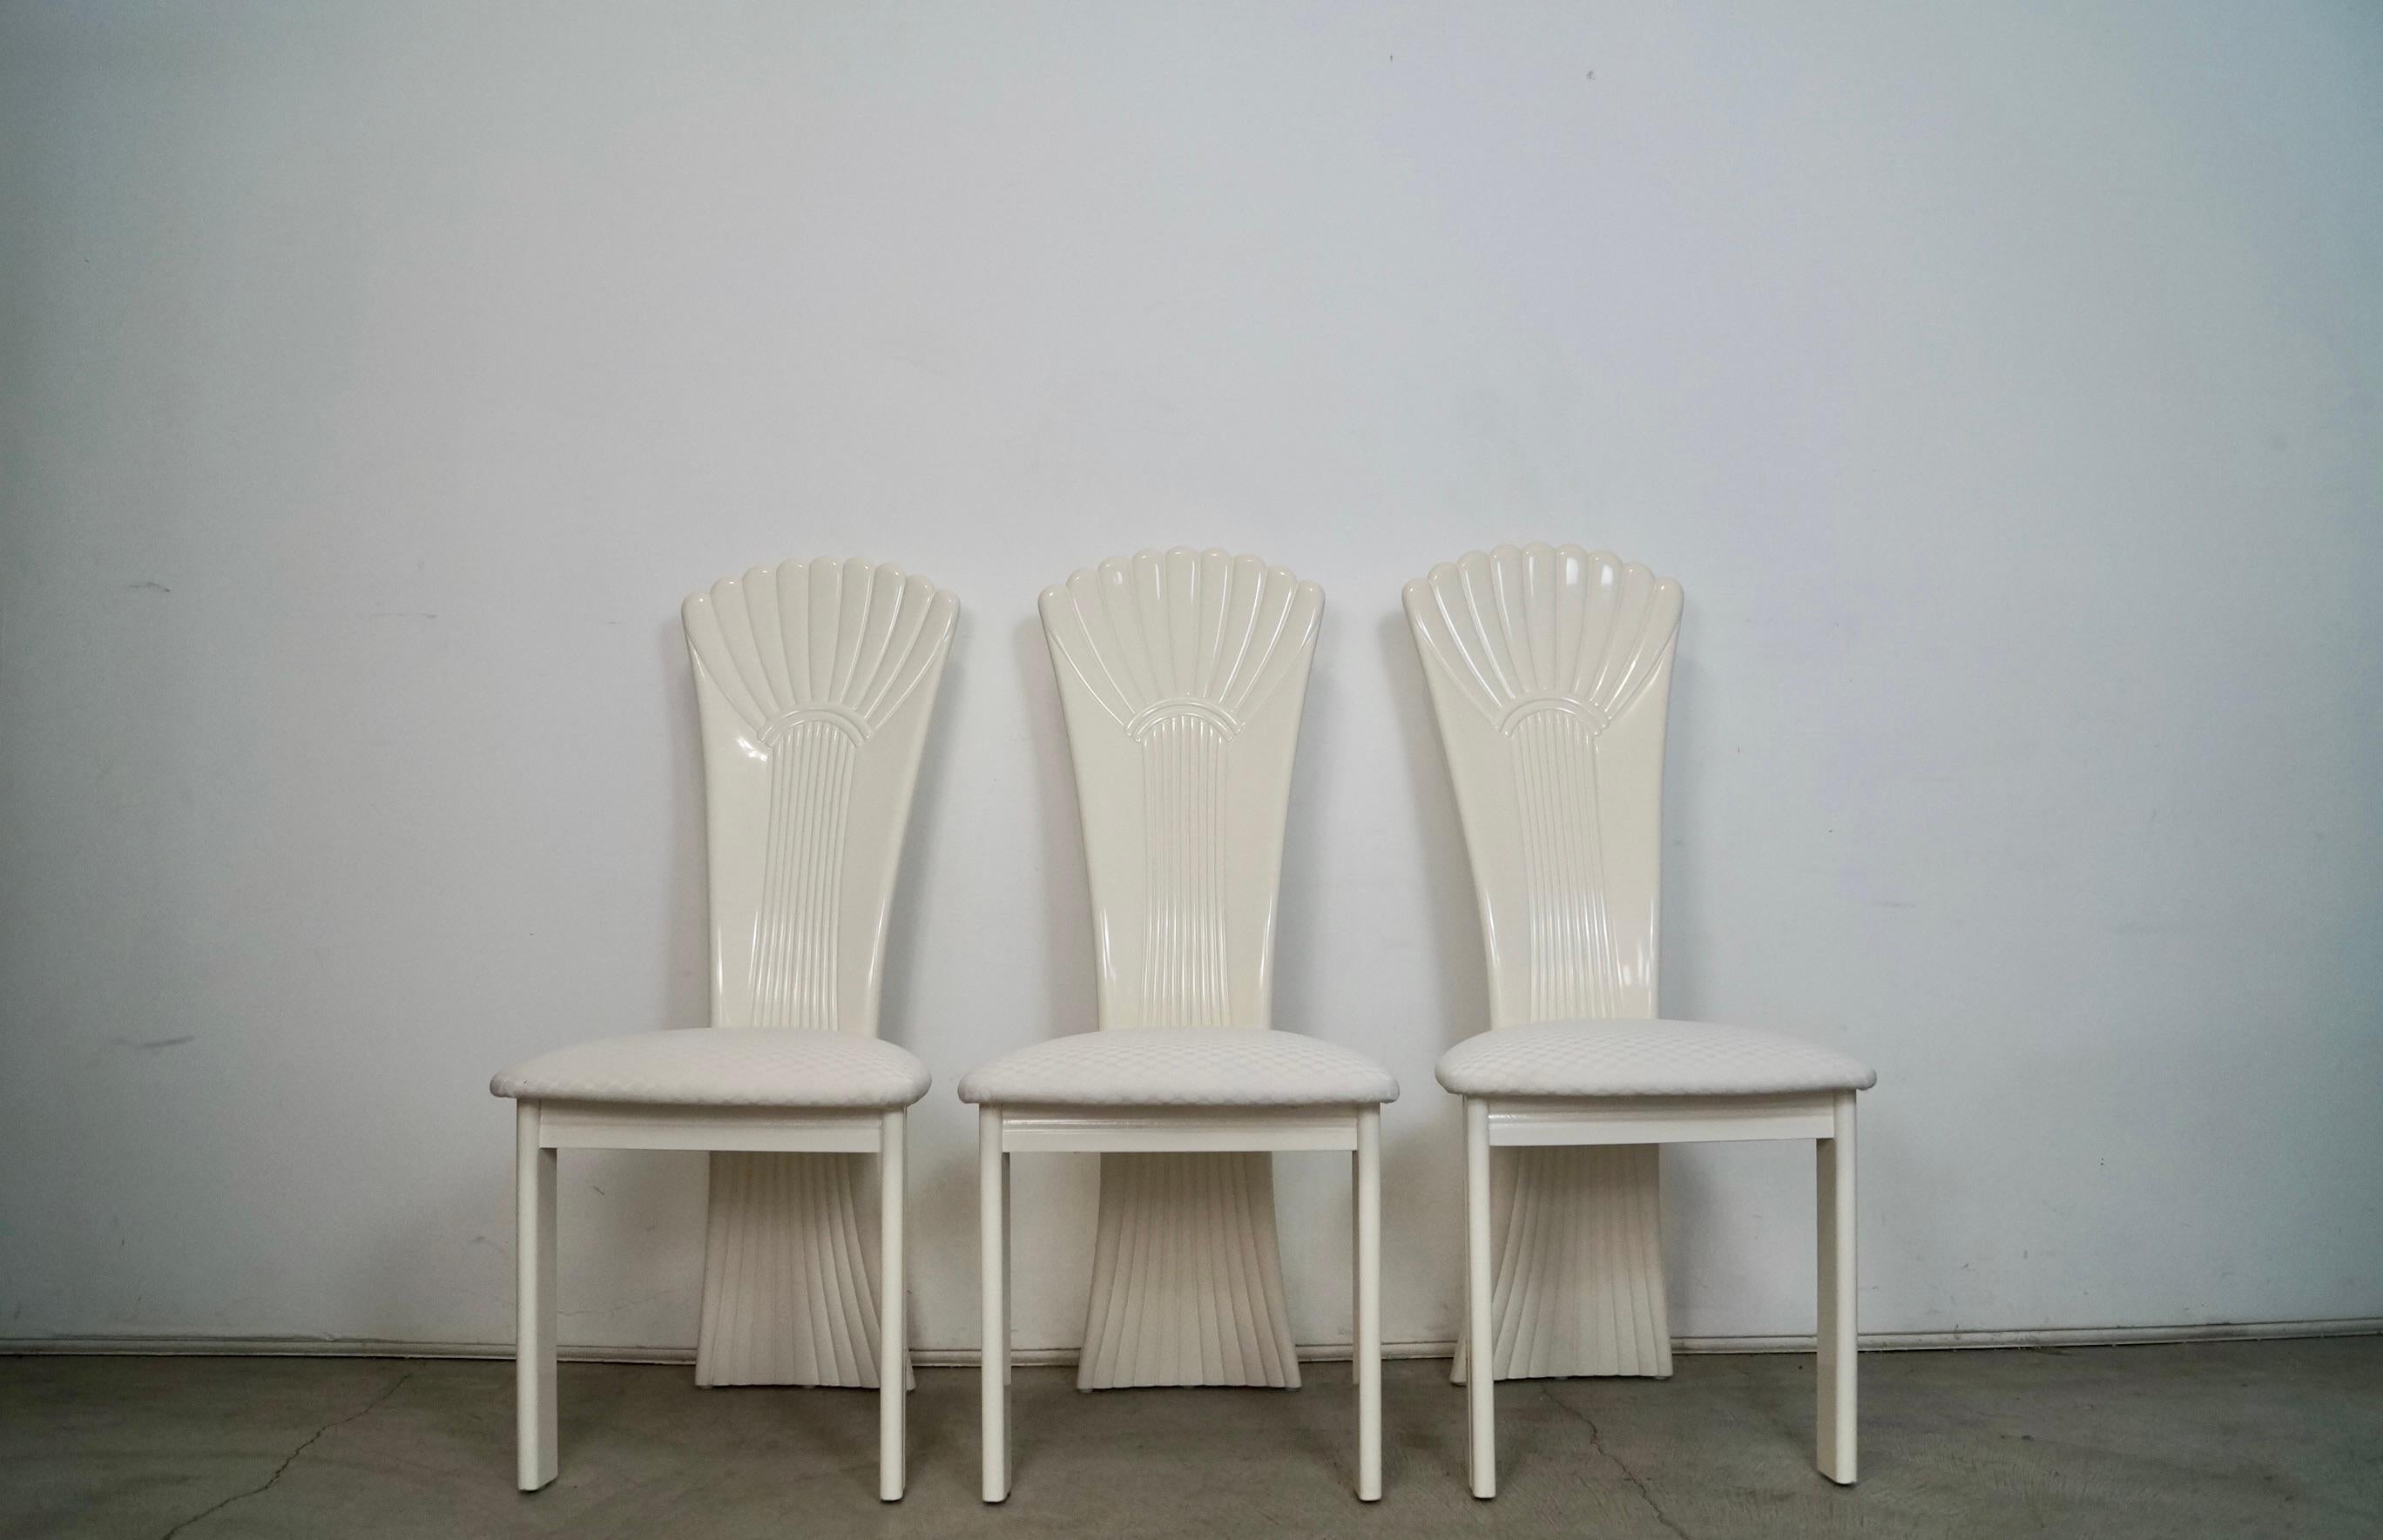 Ensemble de 3 chaises de salle à manger Hollywood Regency à vendre. Chaises post-modernes vintage fabriquées dans les années 1980, fabriquées en Italie et vendues par Najarian Furniture. Chaises de très haute qualité en bois massif laqué en blanc.